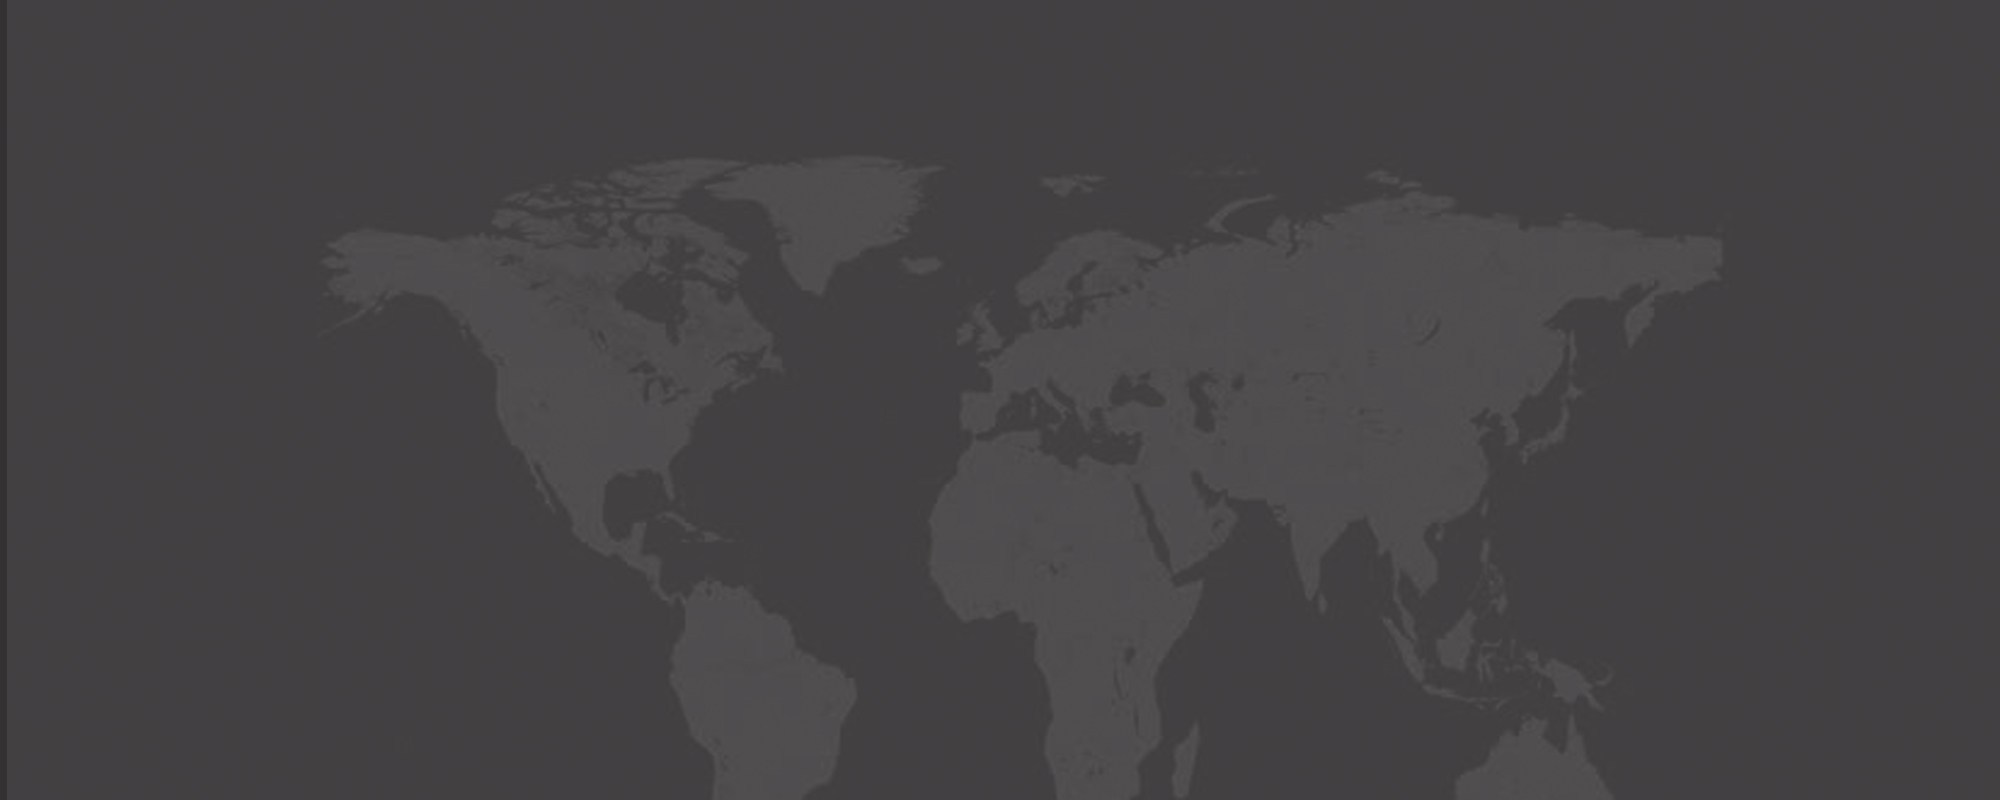 Hình ảnh background bản đồ thế giới